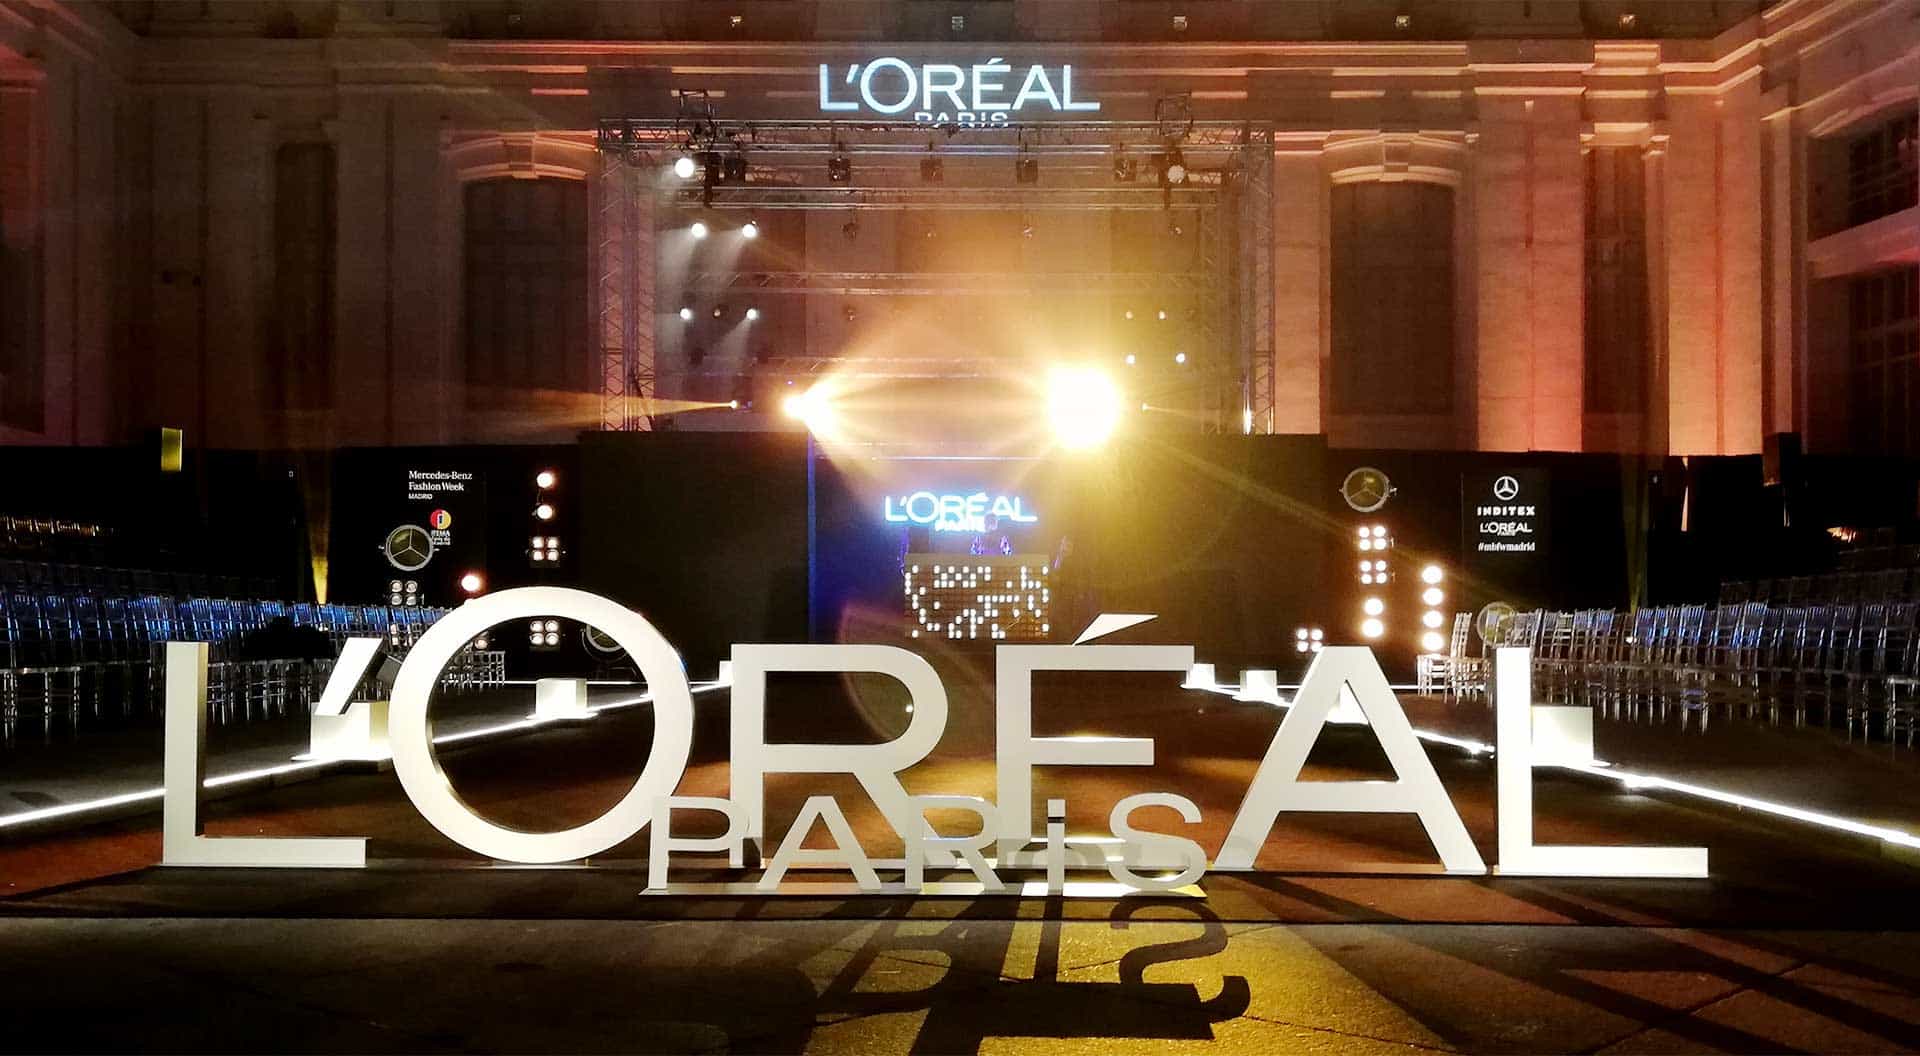 Instalación de decoraciones en eventos para la marca Loréal